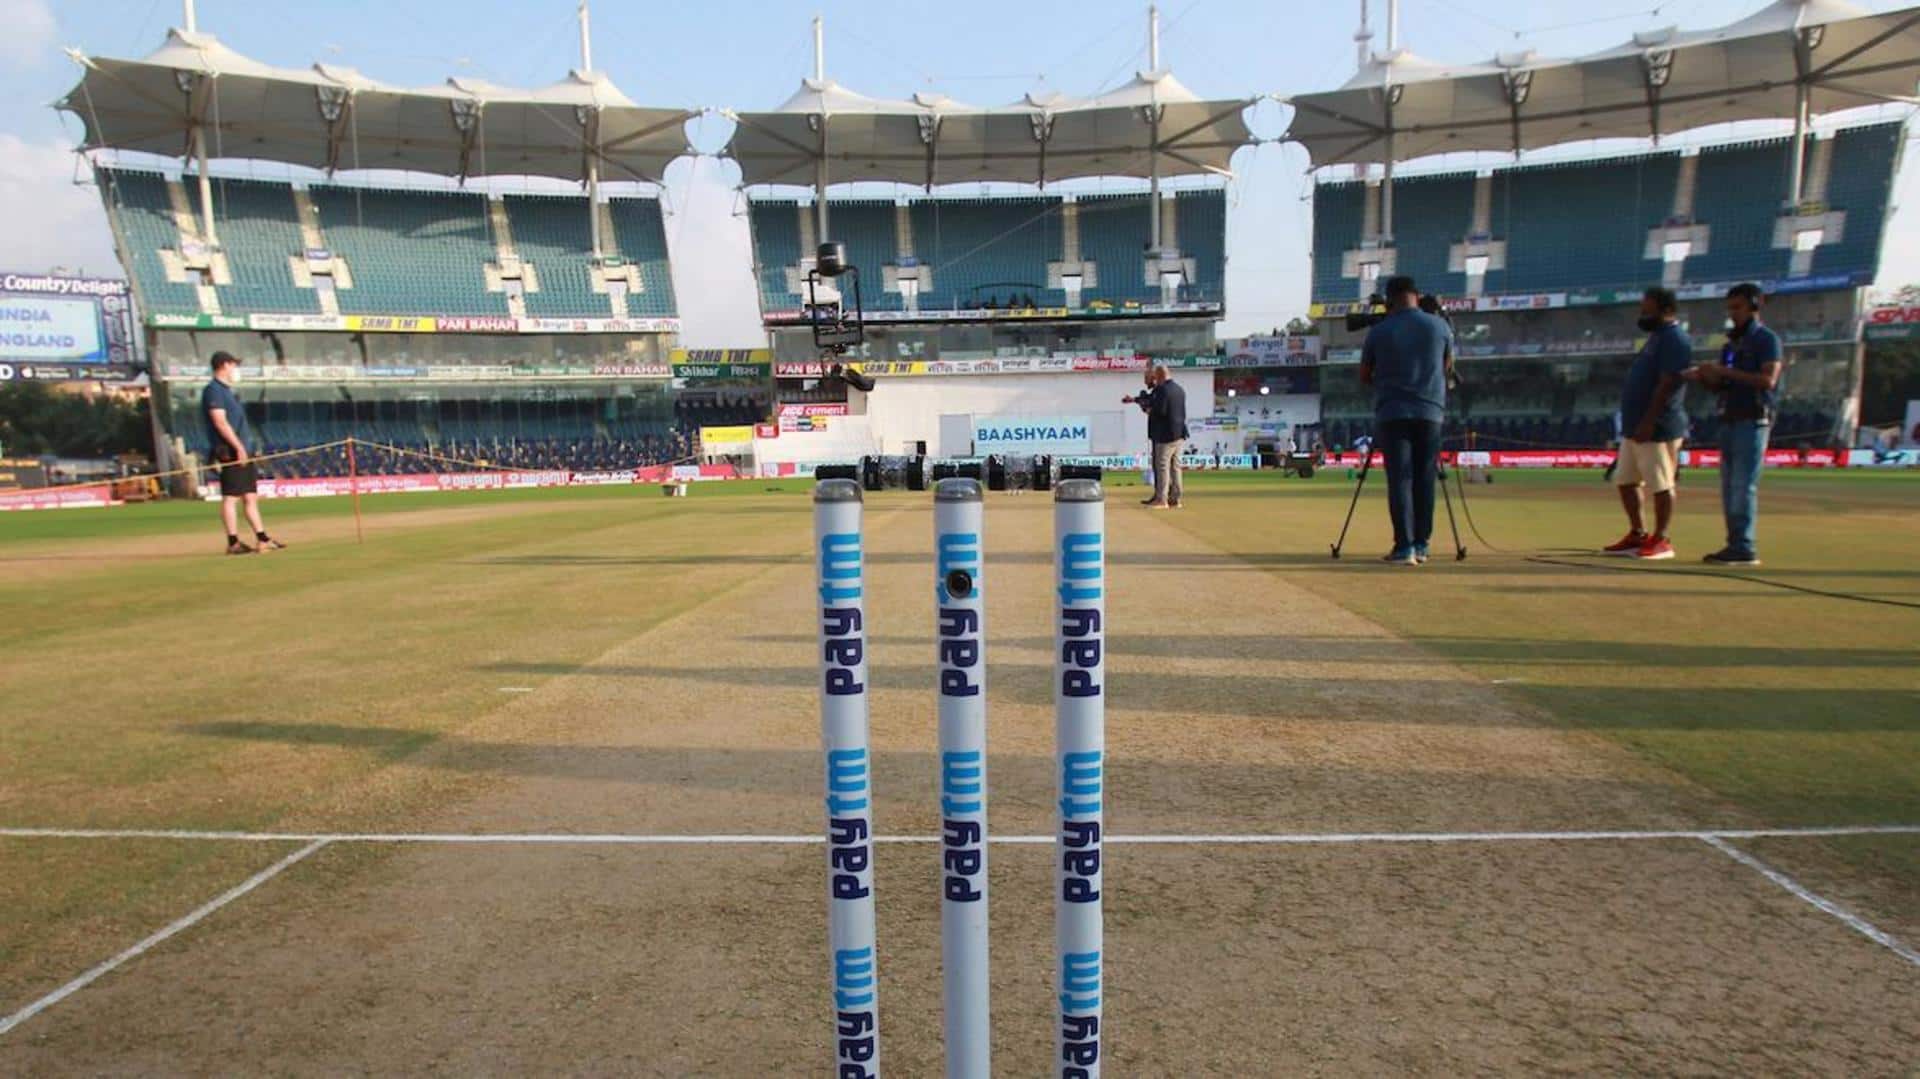 India vs Australia, Chepauk Stadium: Stats, pitch report, and more